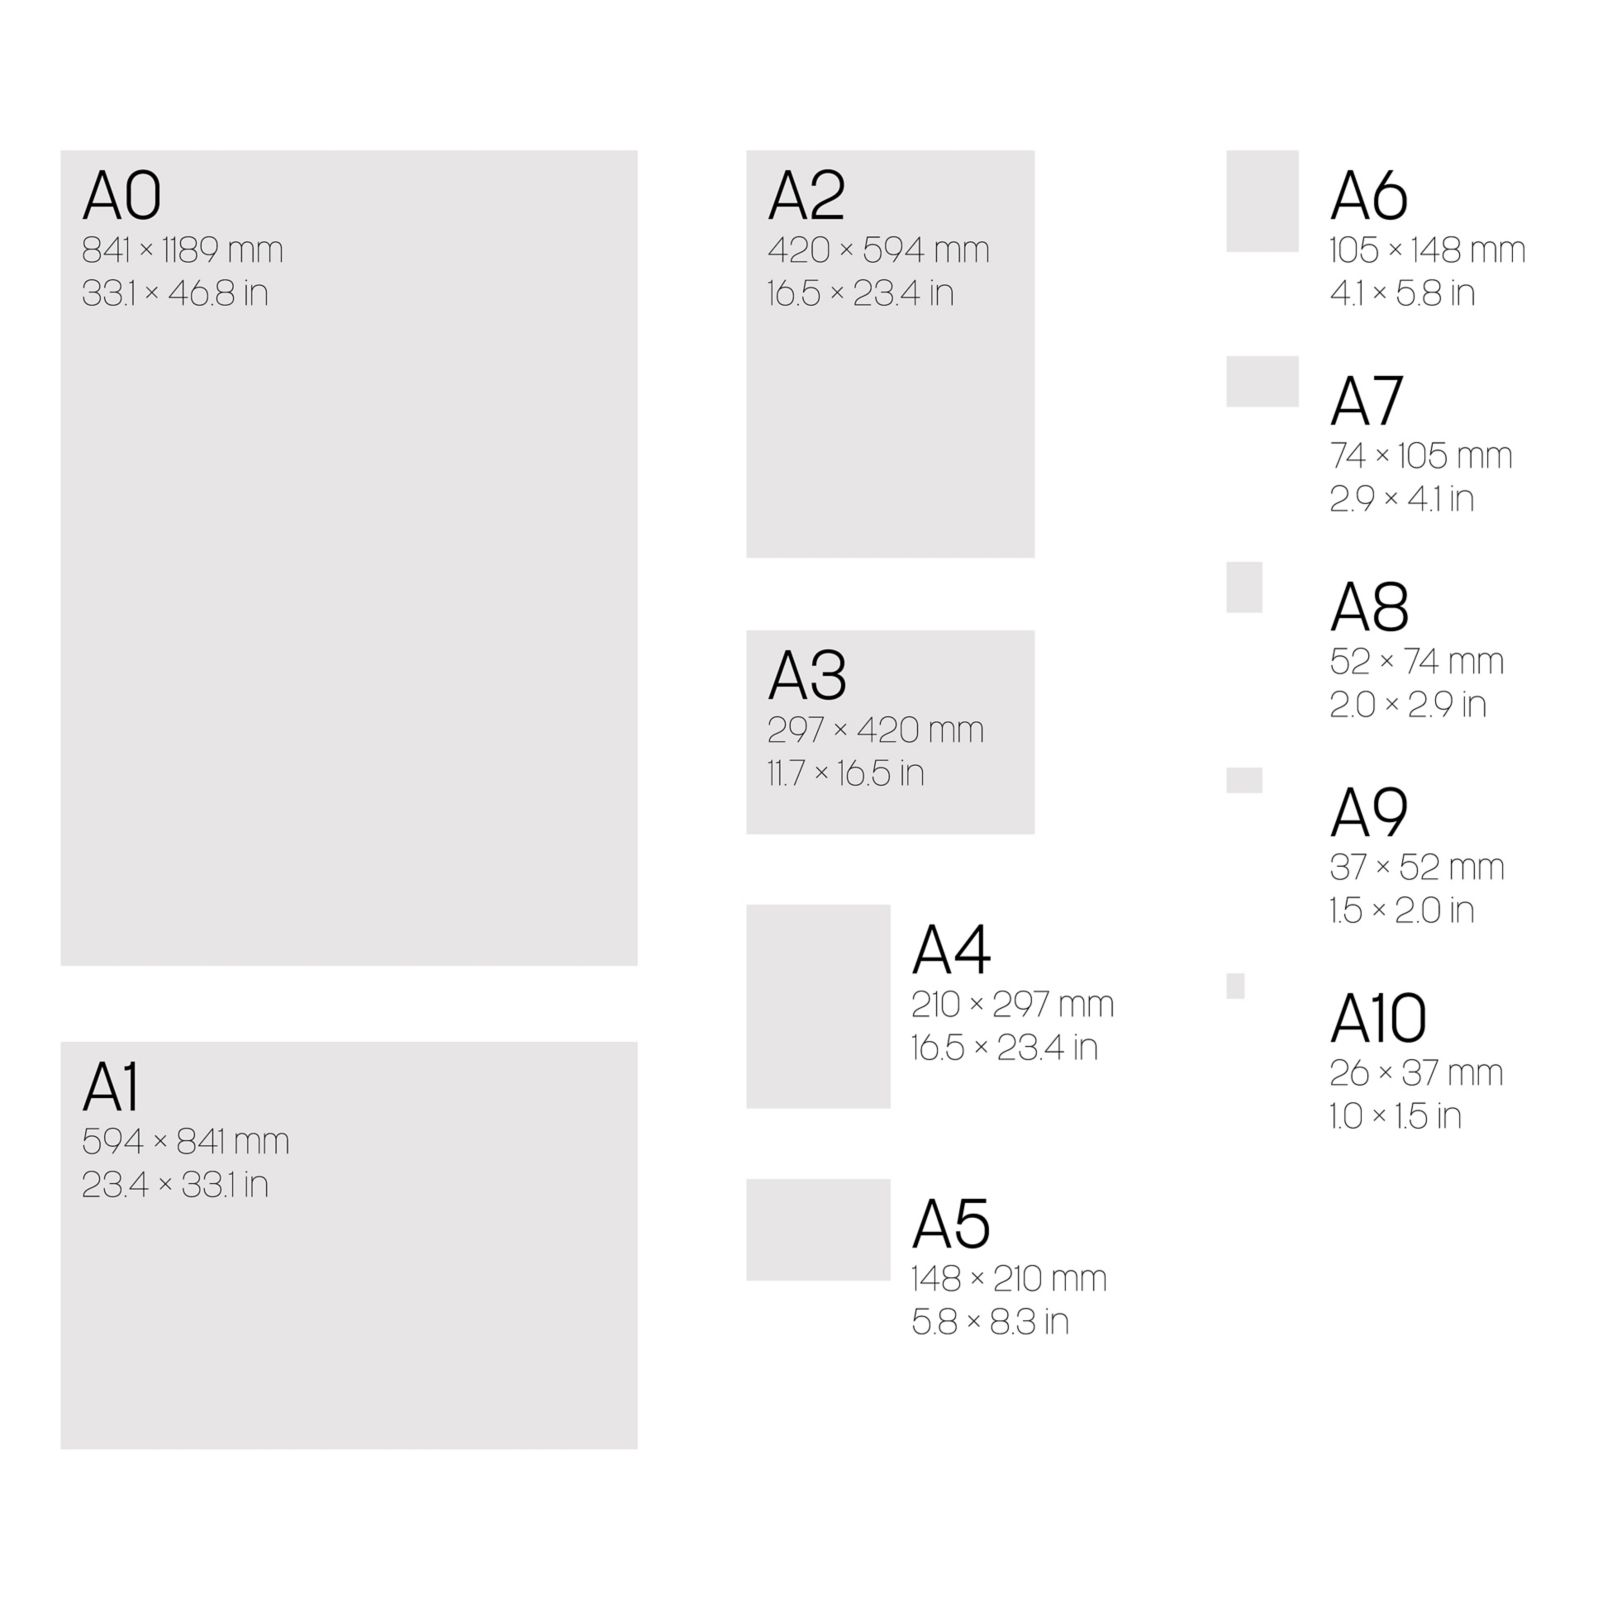 Formato A2: dimensioni e prodotti in A2 a catalogo